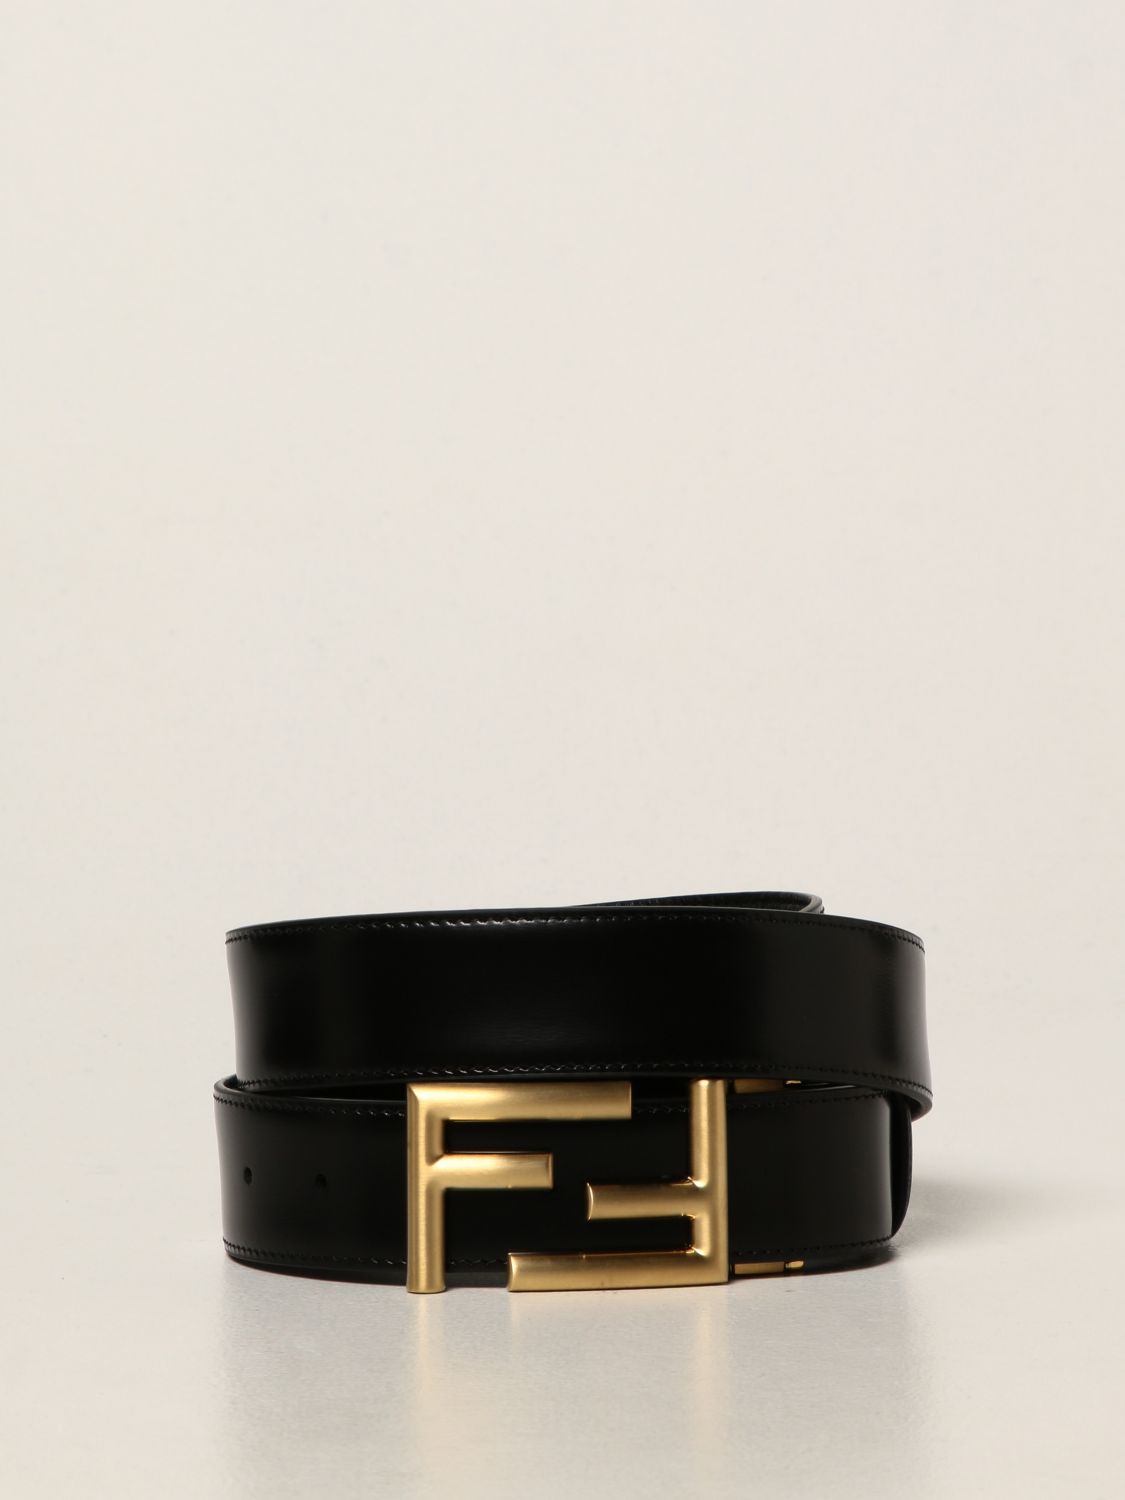 FENDI: leather belt | Belt Fendi Men Black | Belt Fendi 7C0344 70J ...